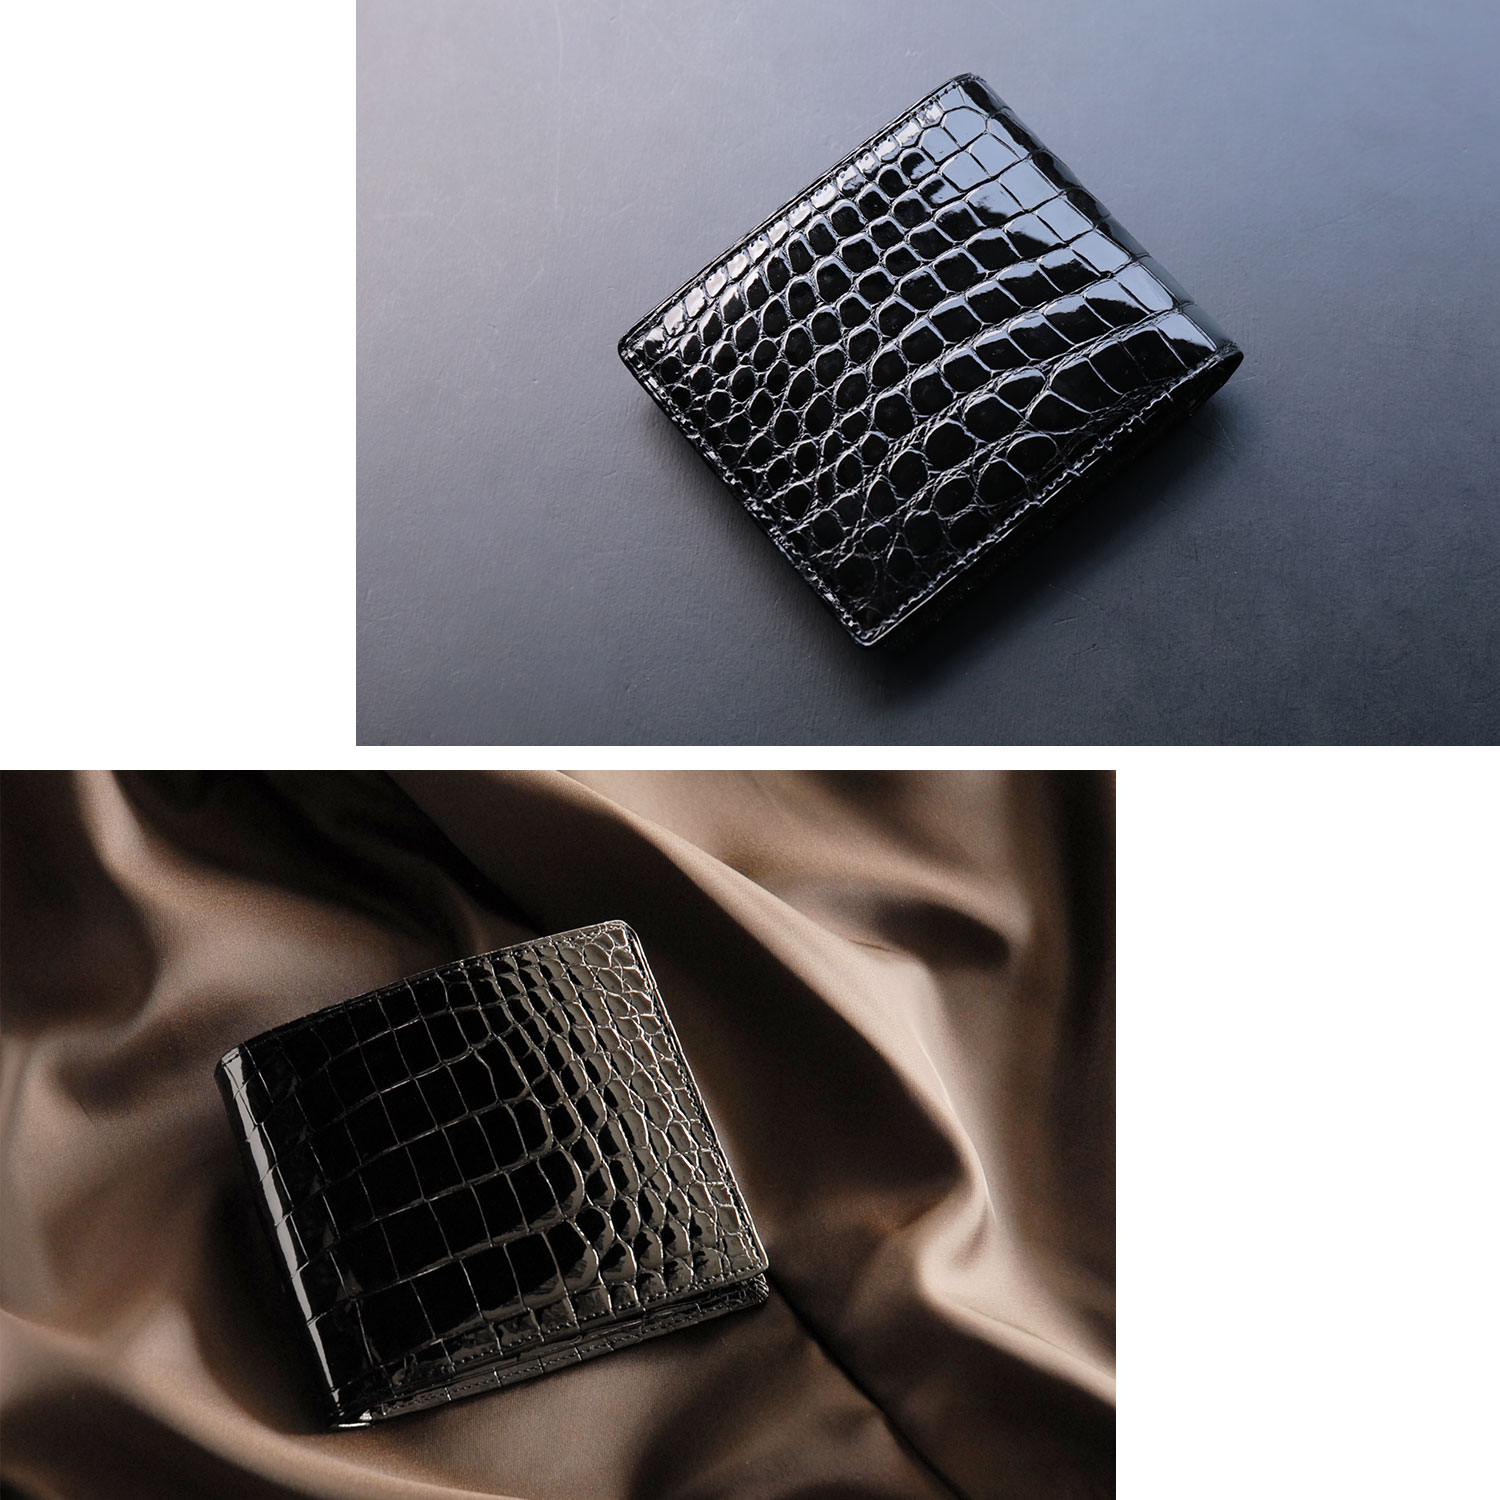 日本製二つ折り財布ナイルクロコダイル